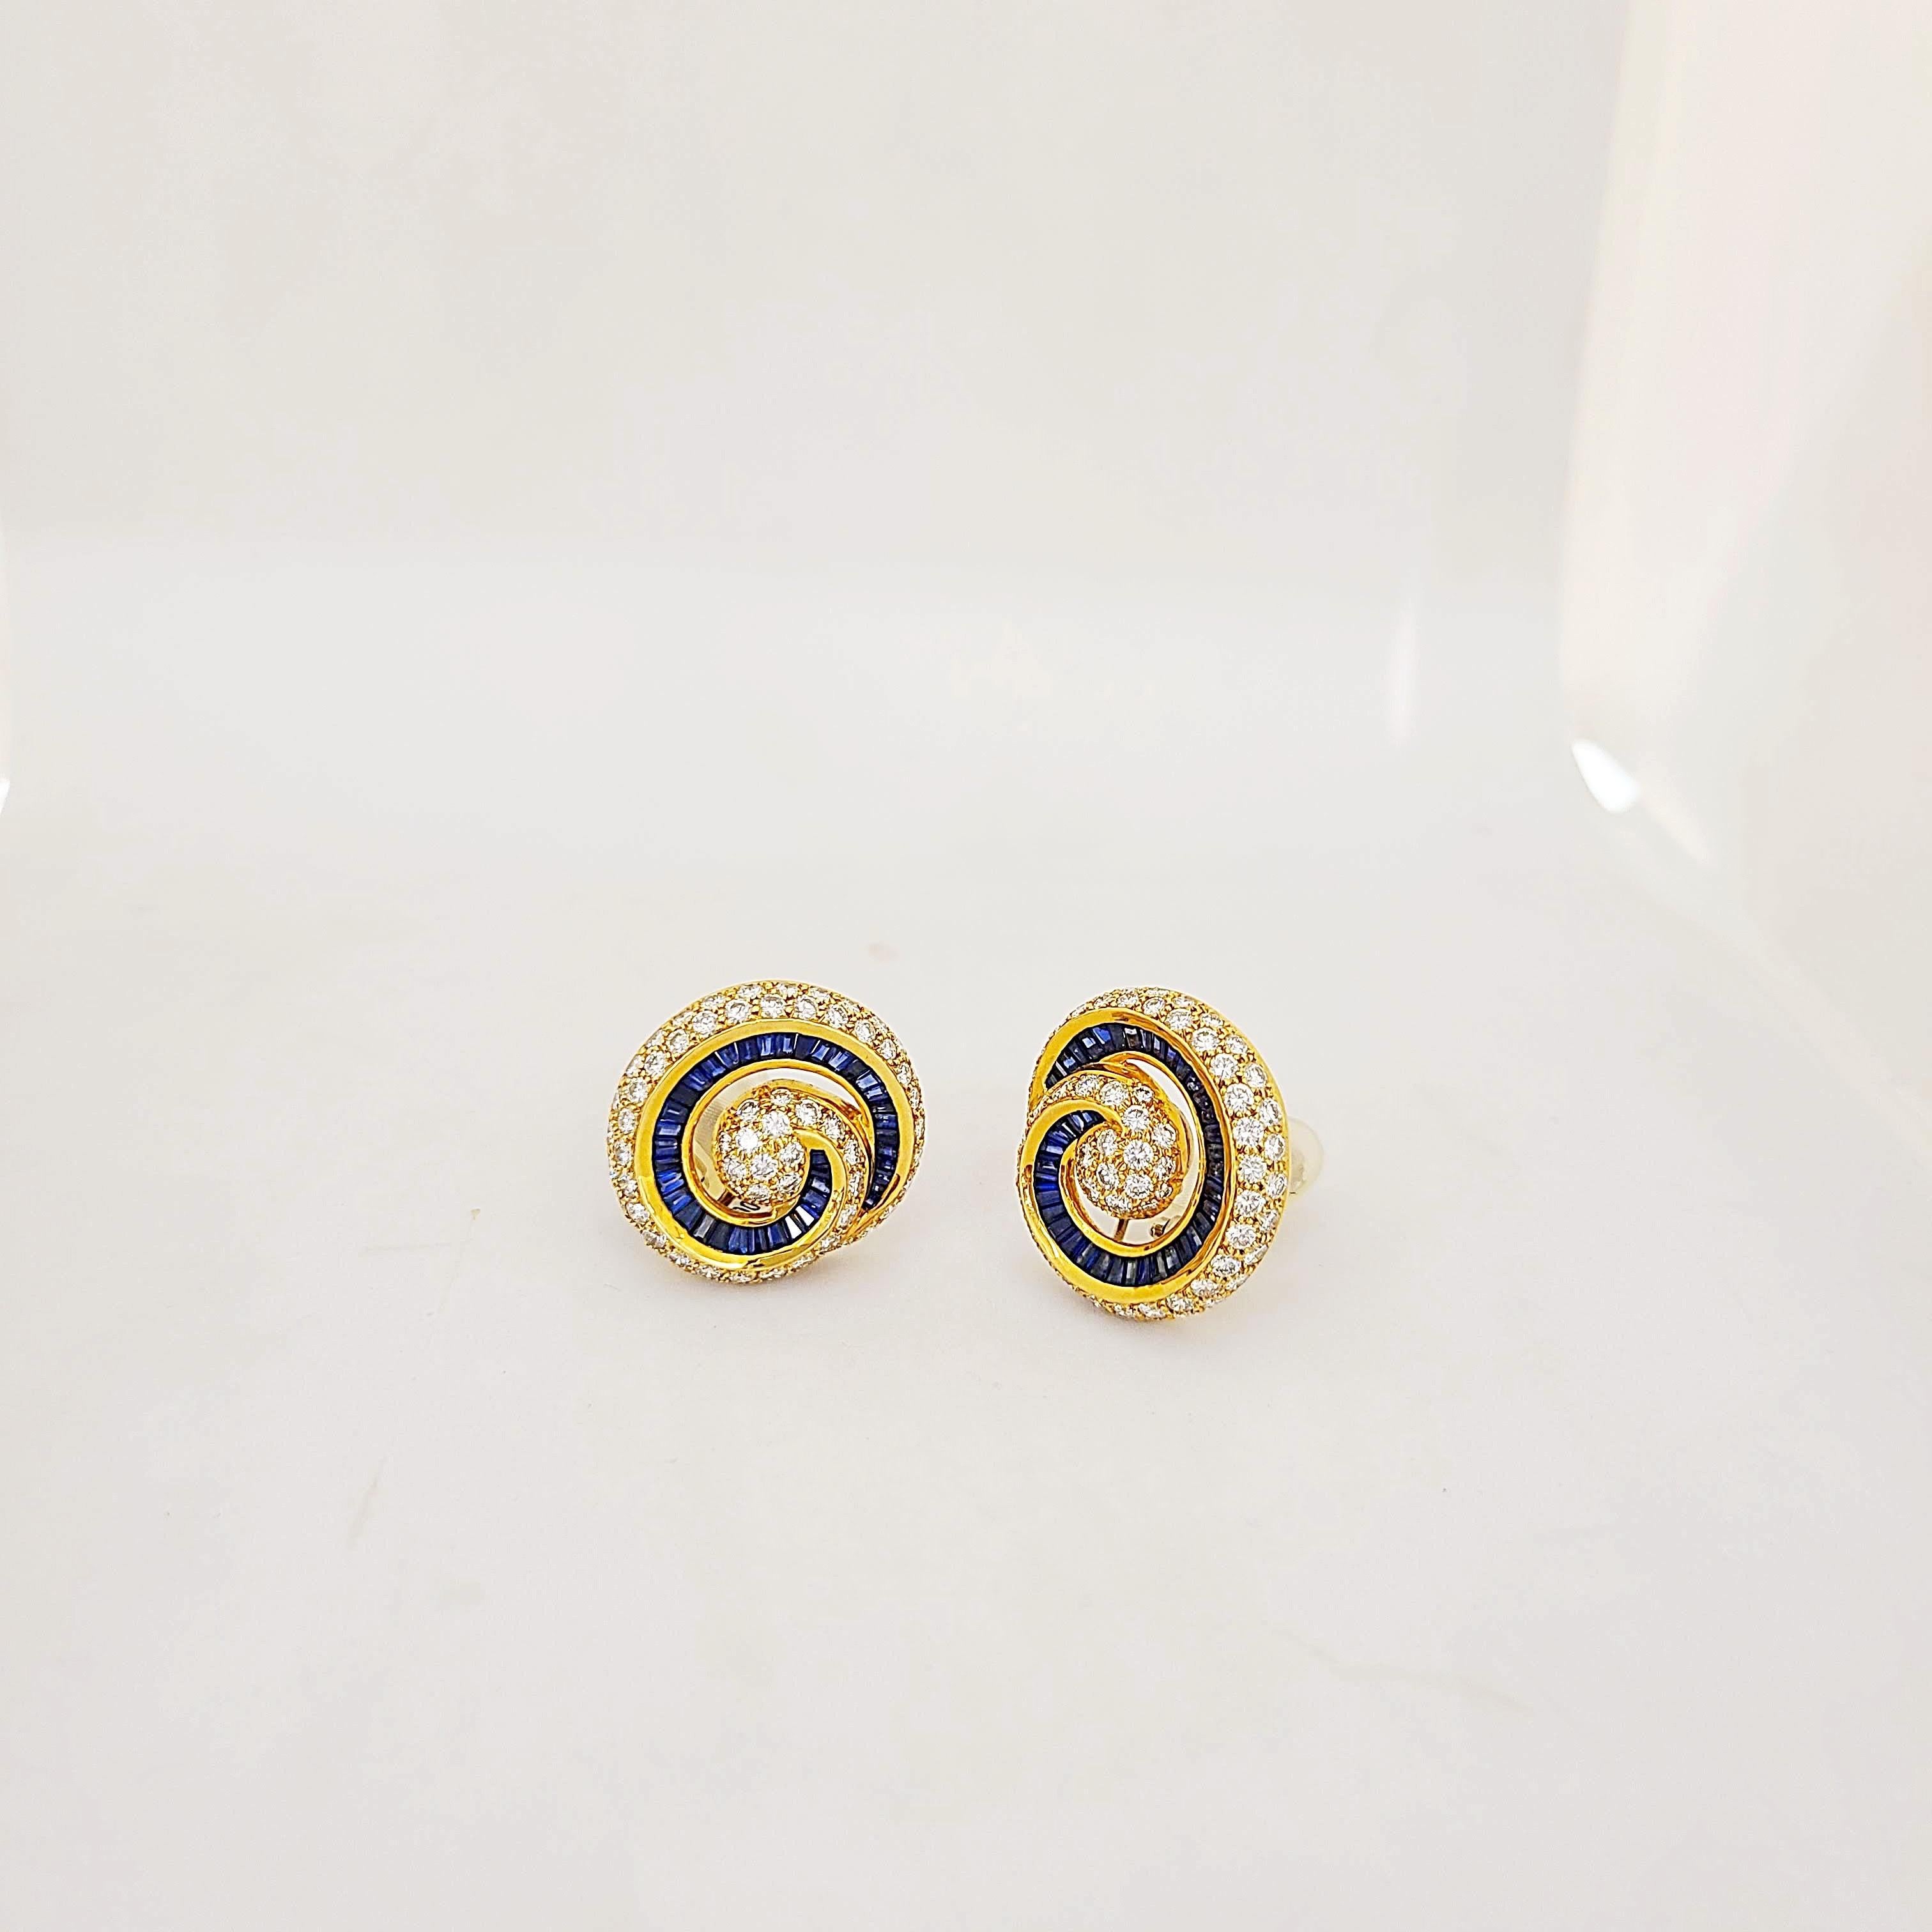 Charles Krypell Jewelry ist eine in New York ansässige Schmuckmarke, die für ihre exquisite Farbgebung, ihr neuartiges Design und ihre hervorragende Handwerkskunst international bekannt wurde. 
Diese in 18 Karat Gelbgold gefassten Ohrringe bestehen